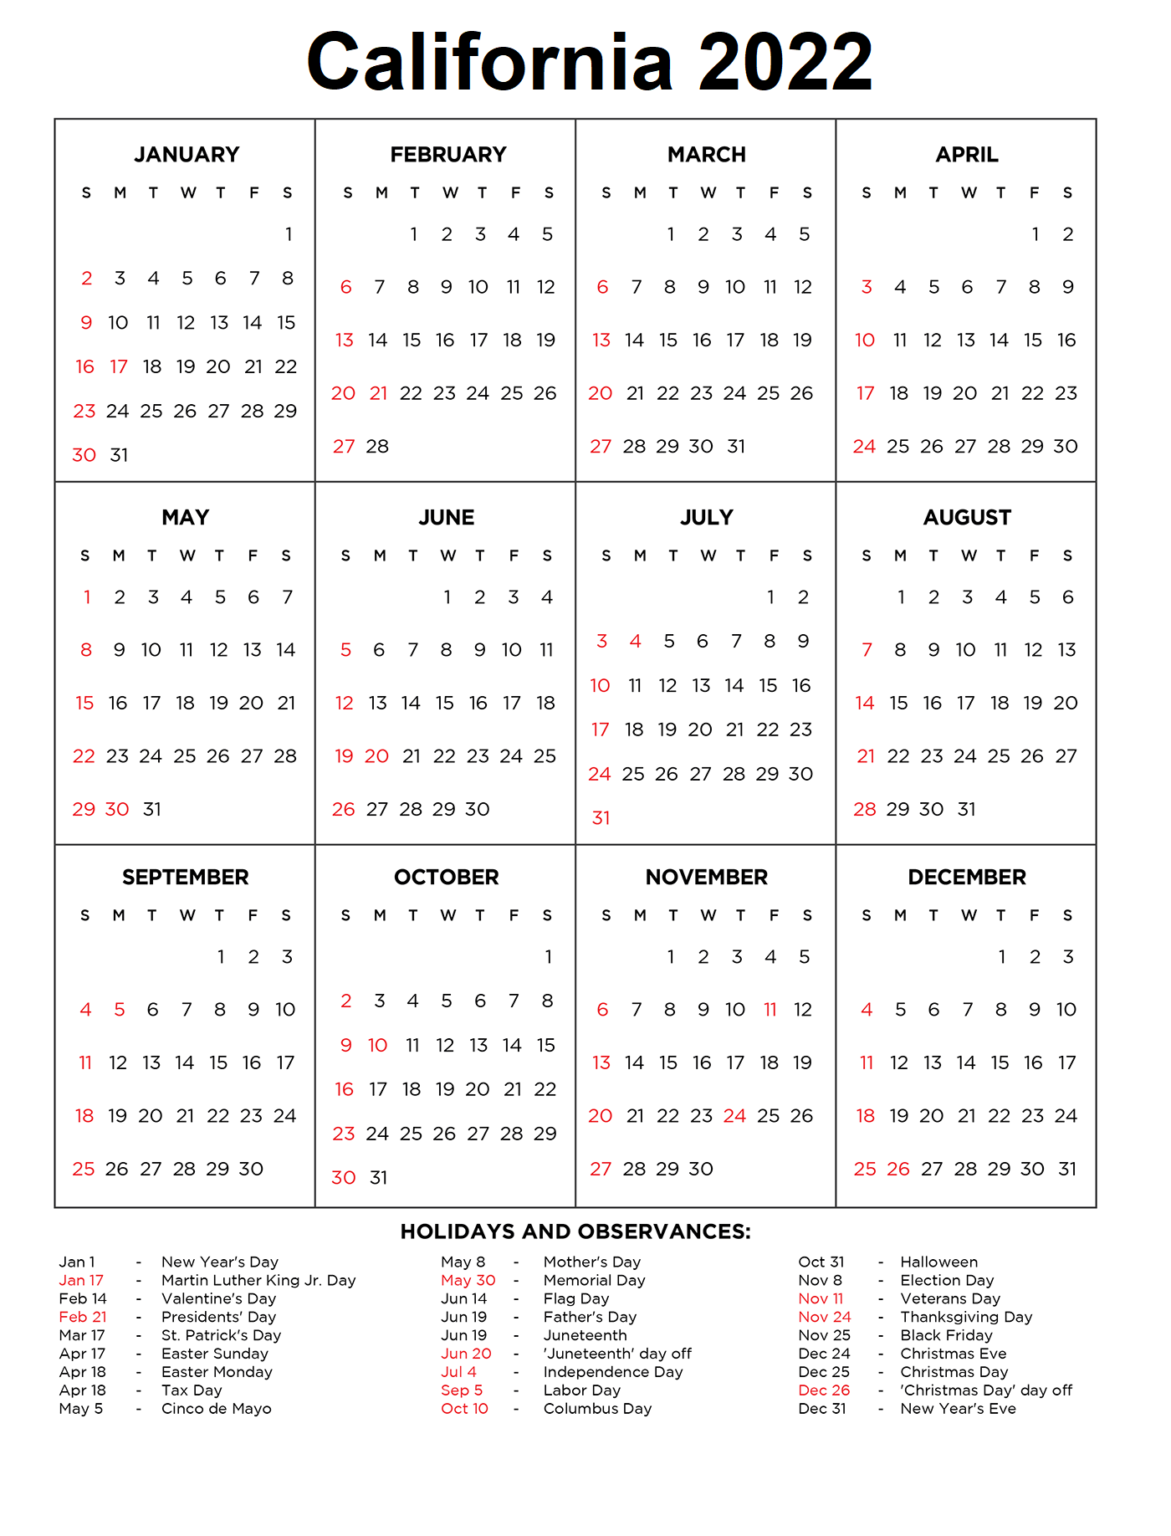 California 2022 Calendar With Holiday | Calendar Dream